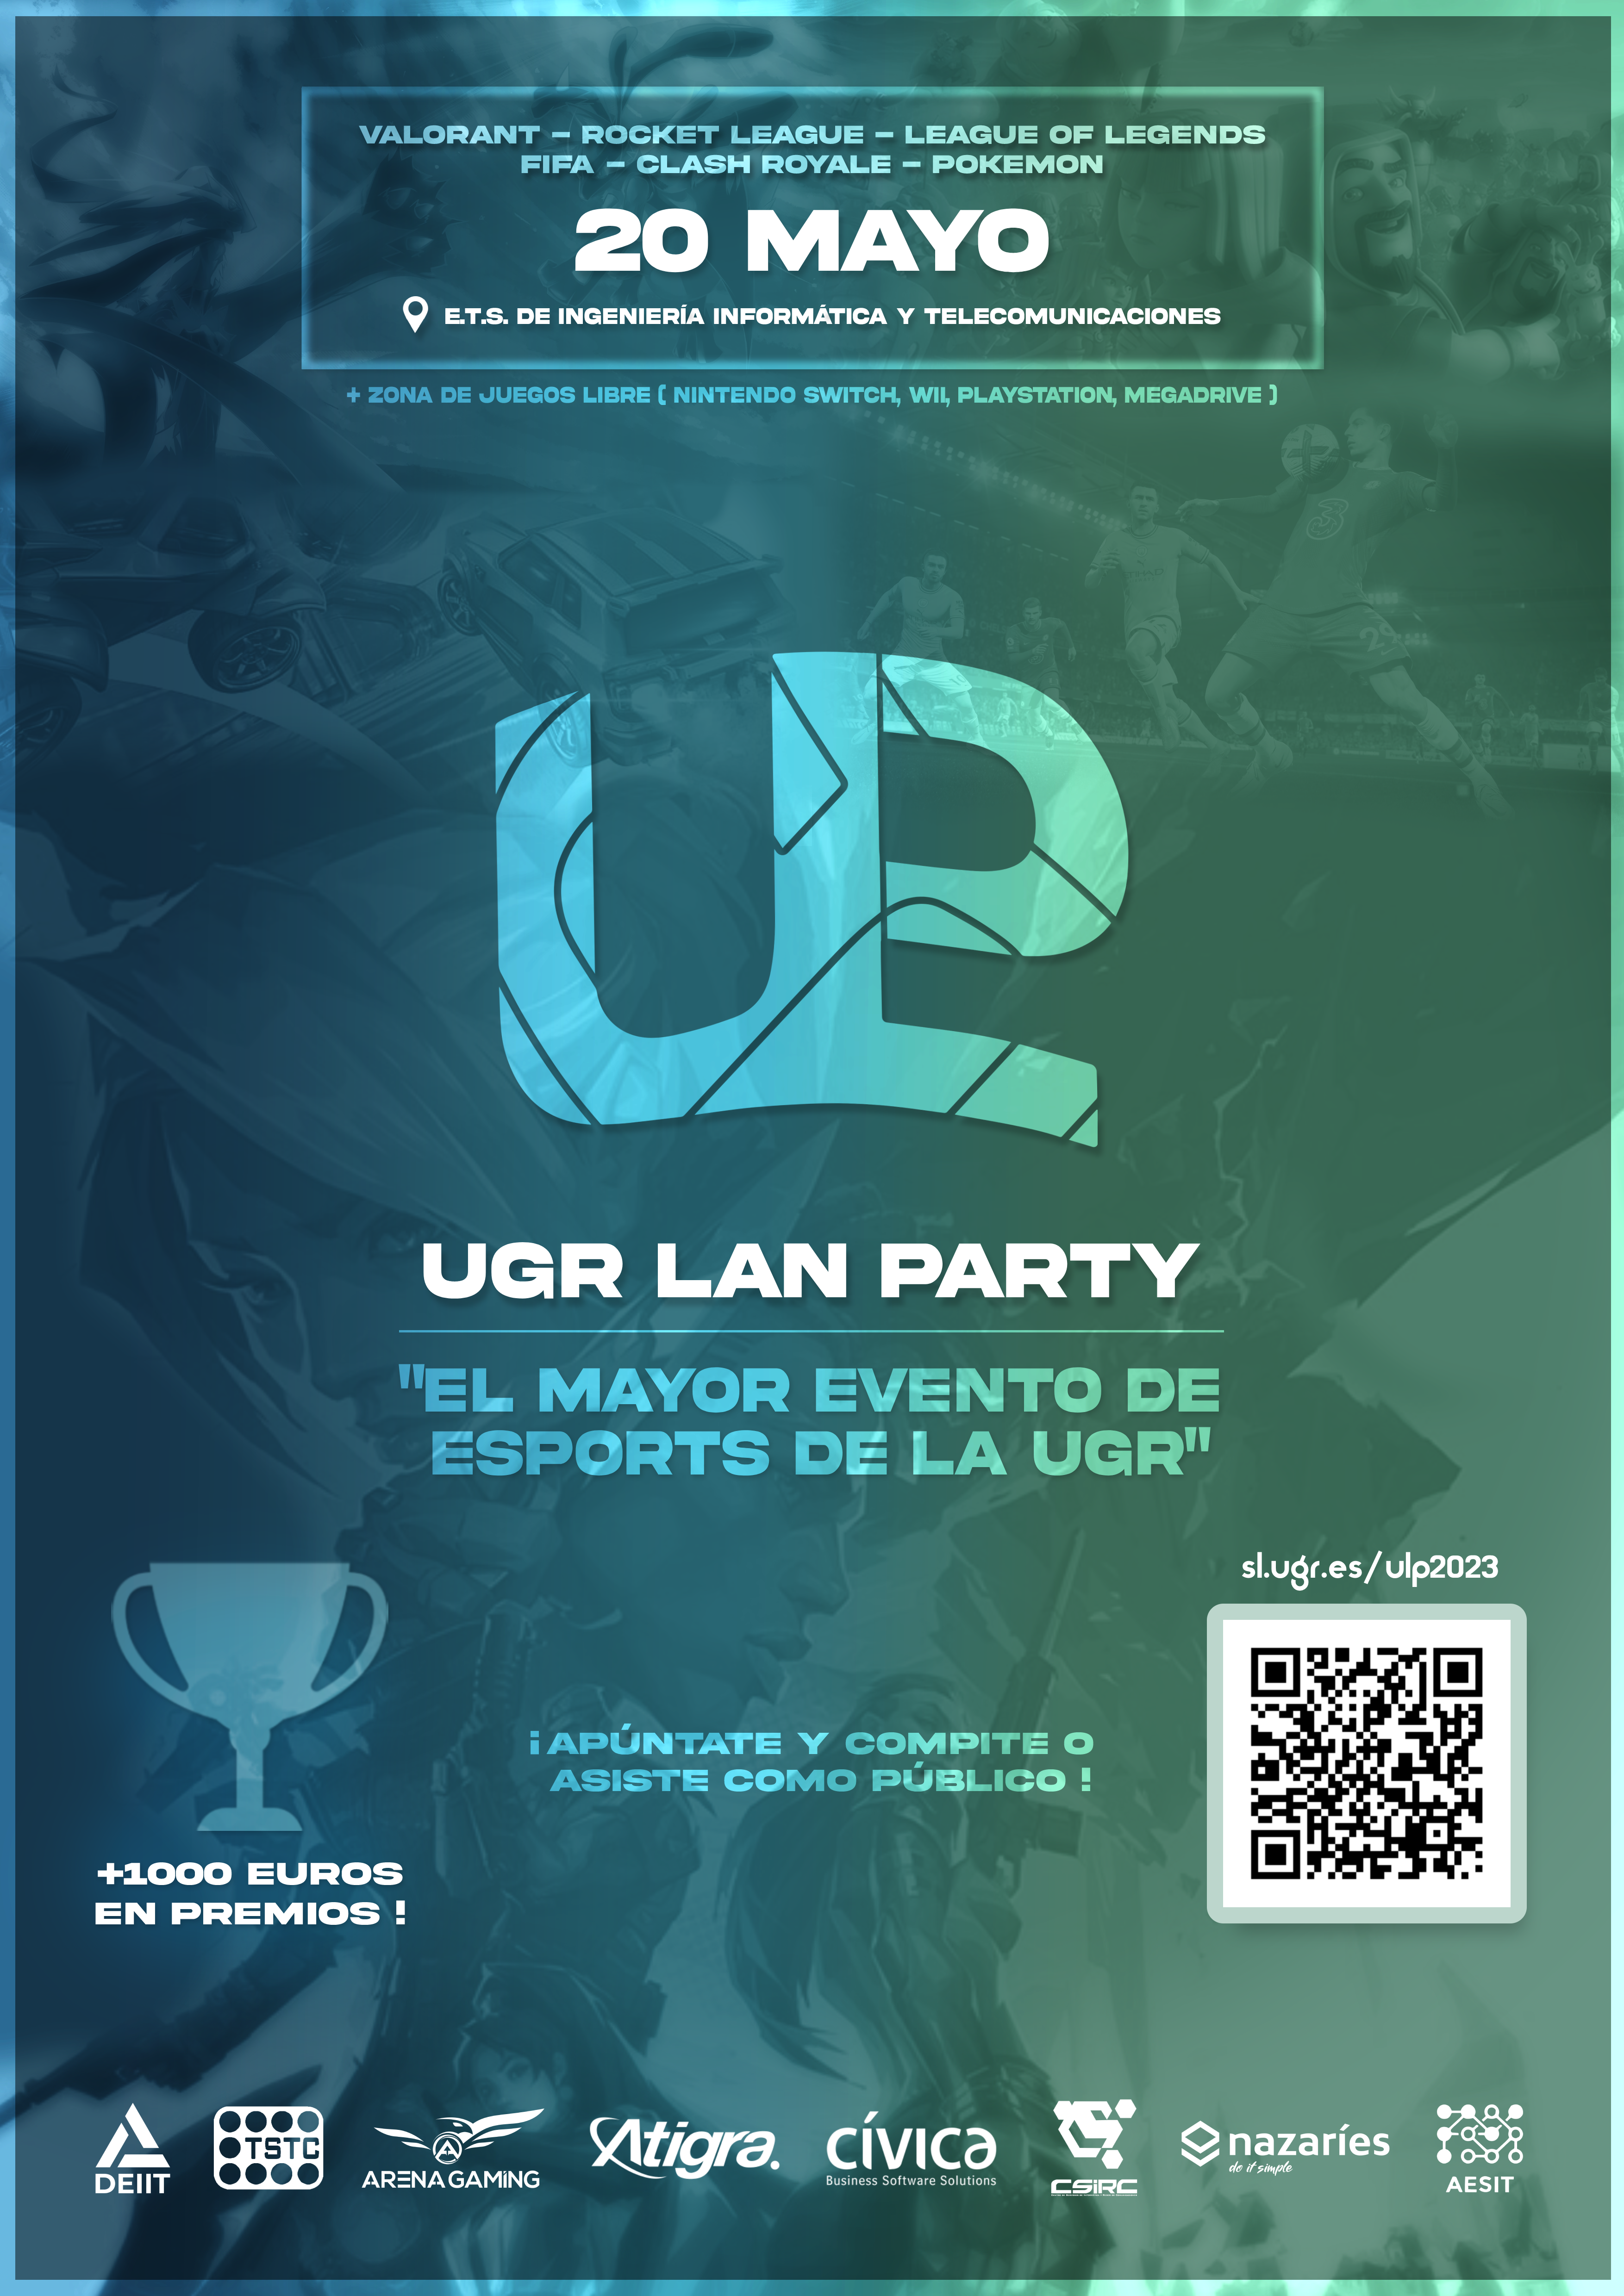 UGR LAN PARTY